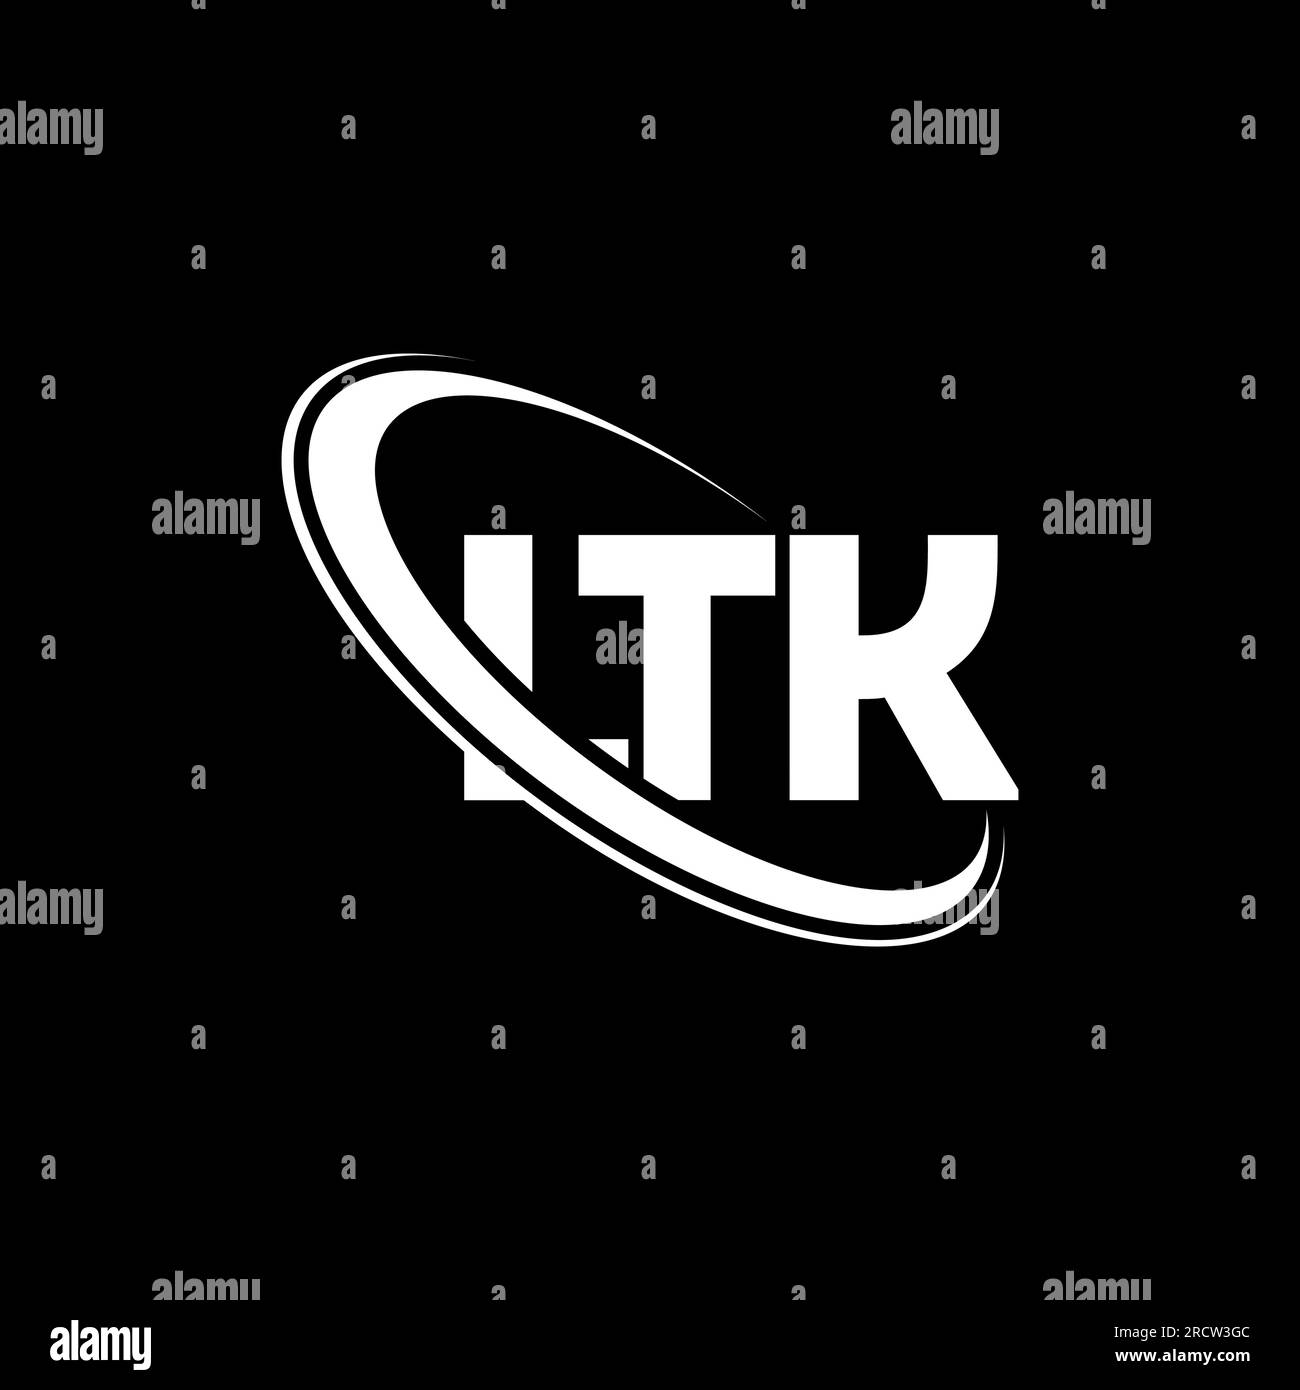 LTK logo. LTK letter. LTK letter logo design. Initials LTK logo linked with circle and uppercase monogram logo. LTK typography for technology, busines Stock Vector